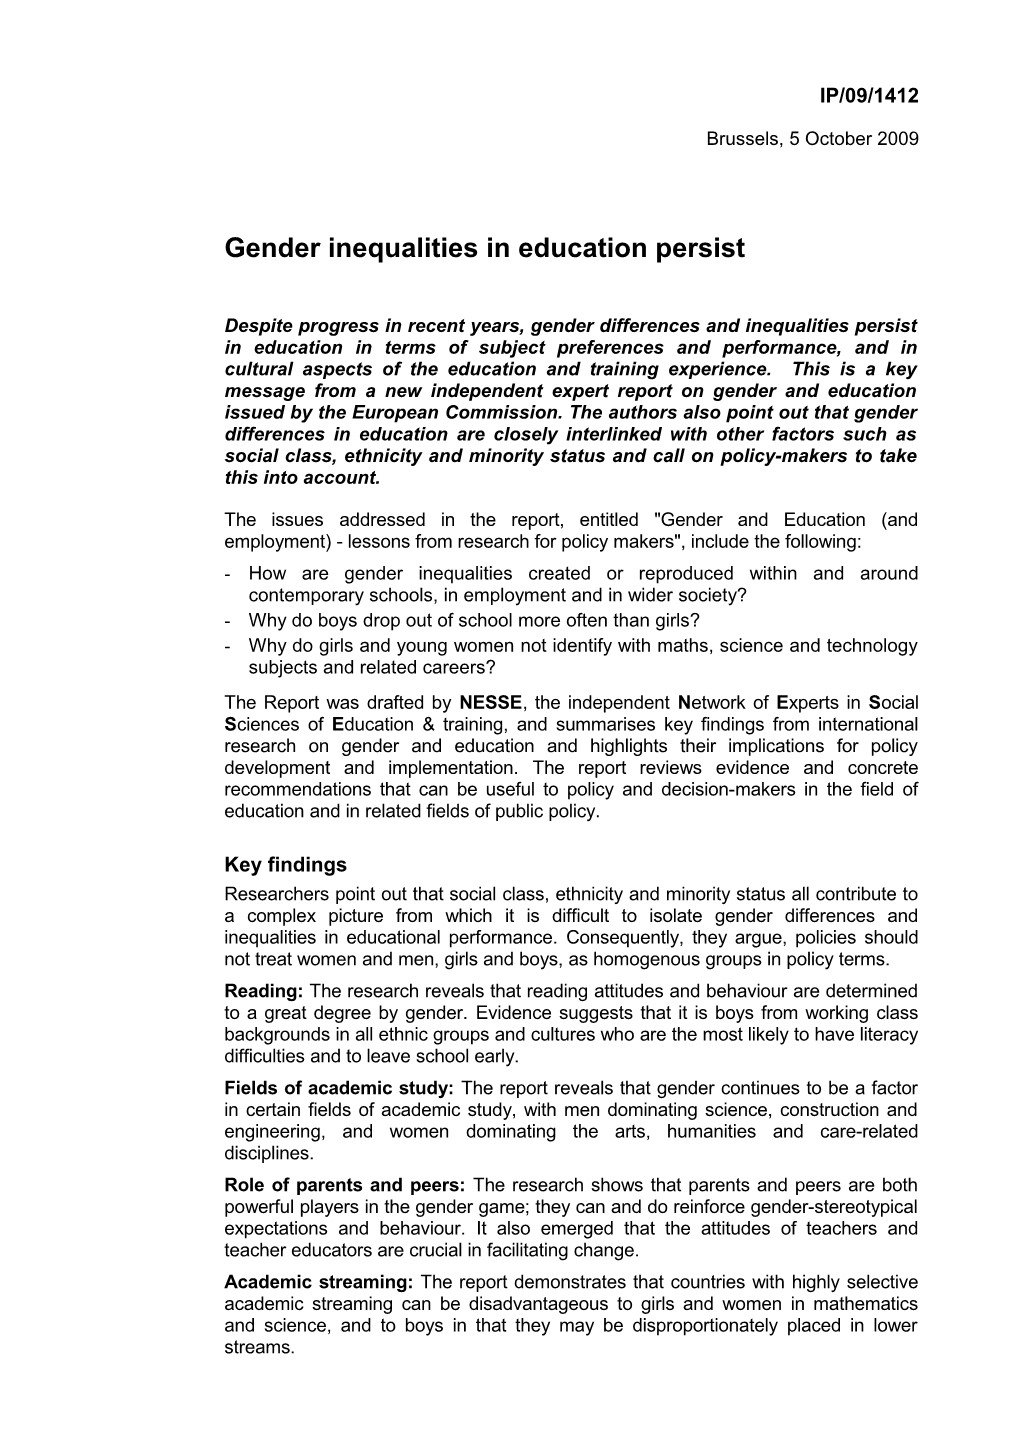 Gender Inequalities in Education Persist